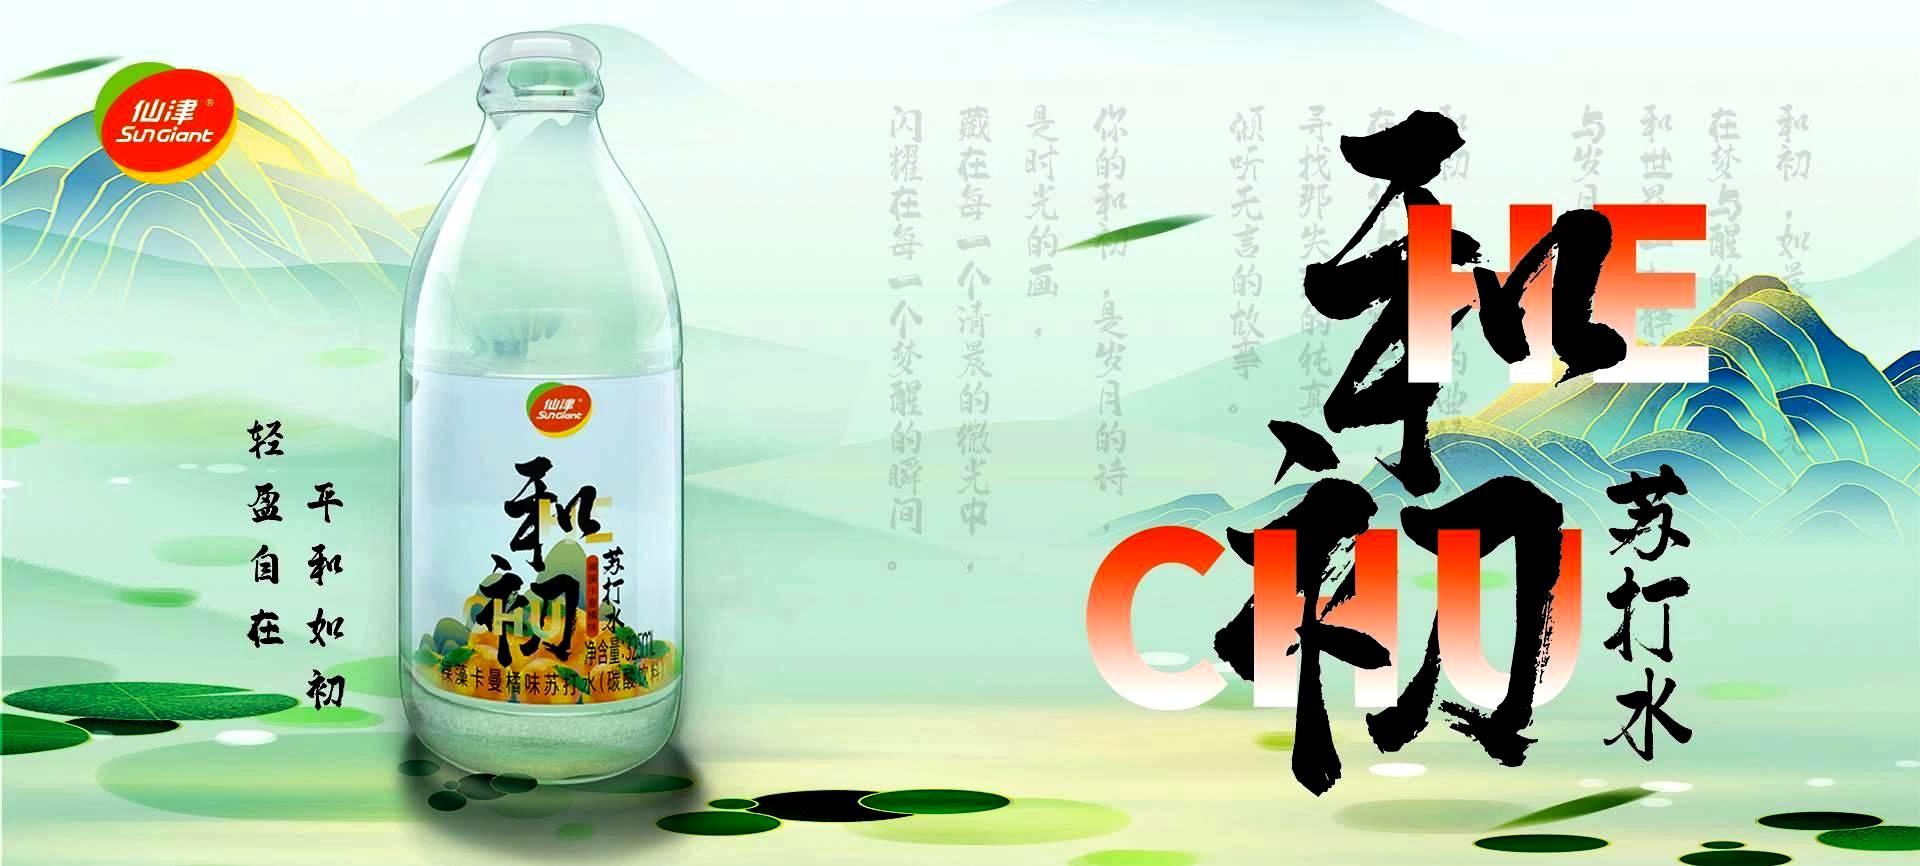 东莞市九游会J9保健饮料食品有限公司